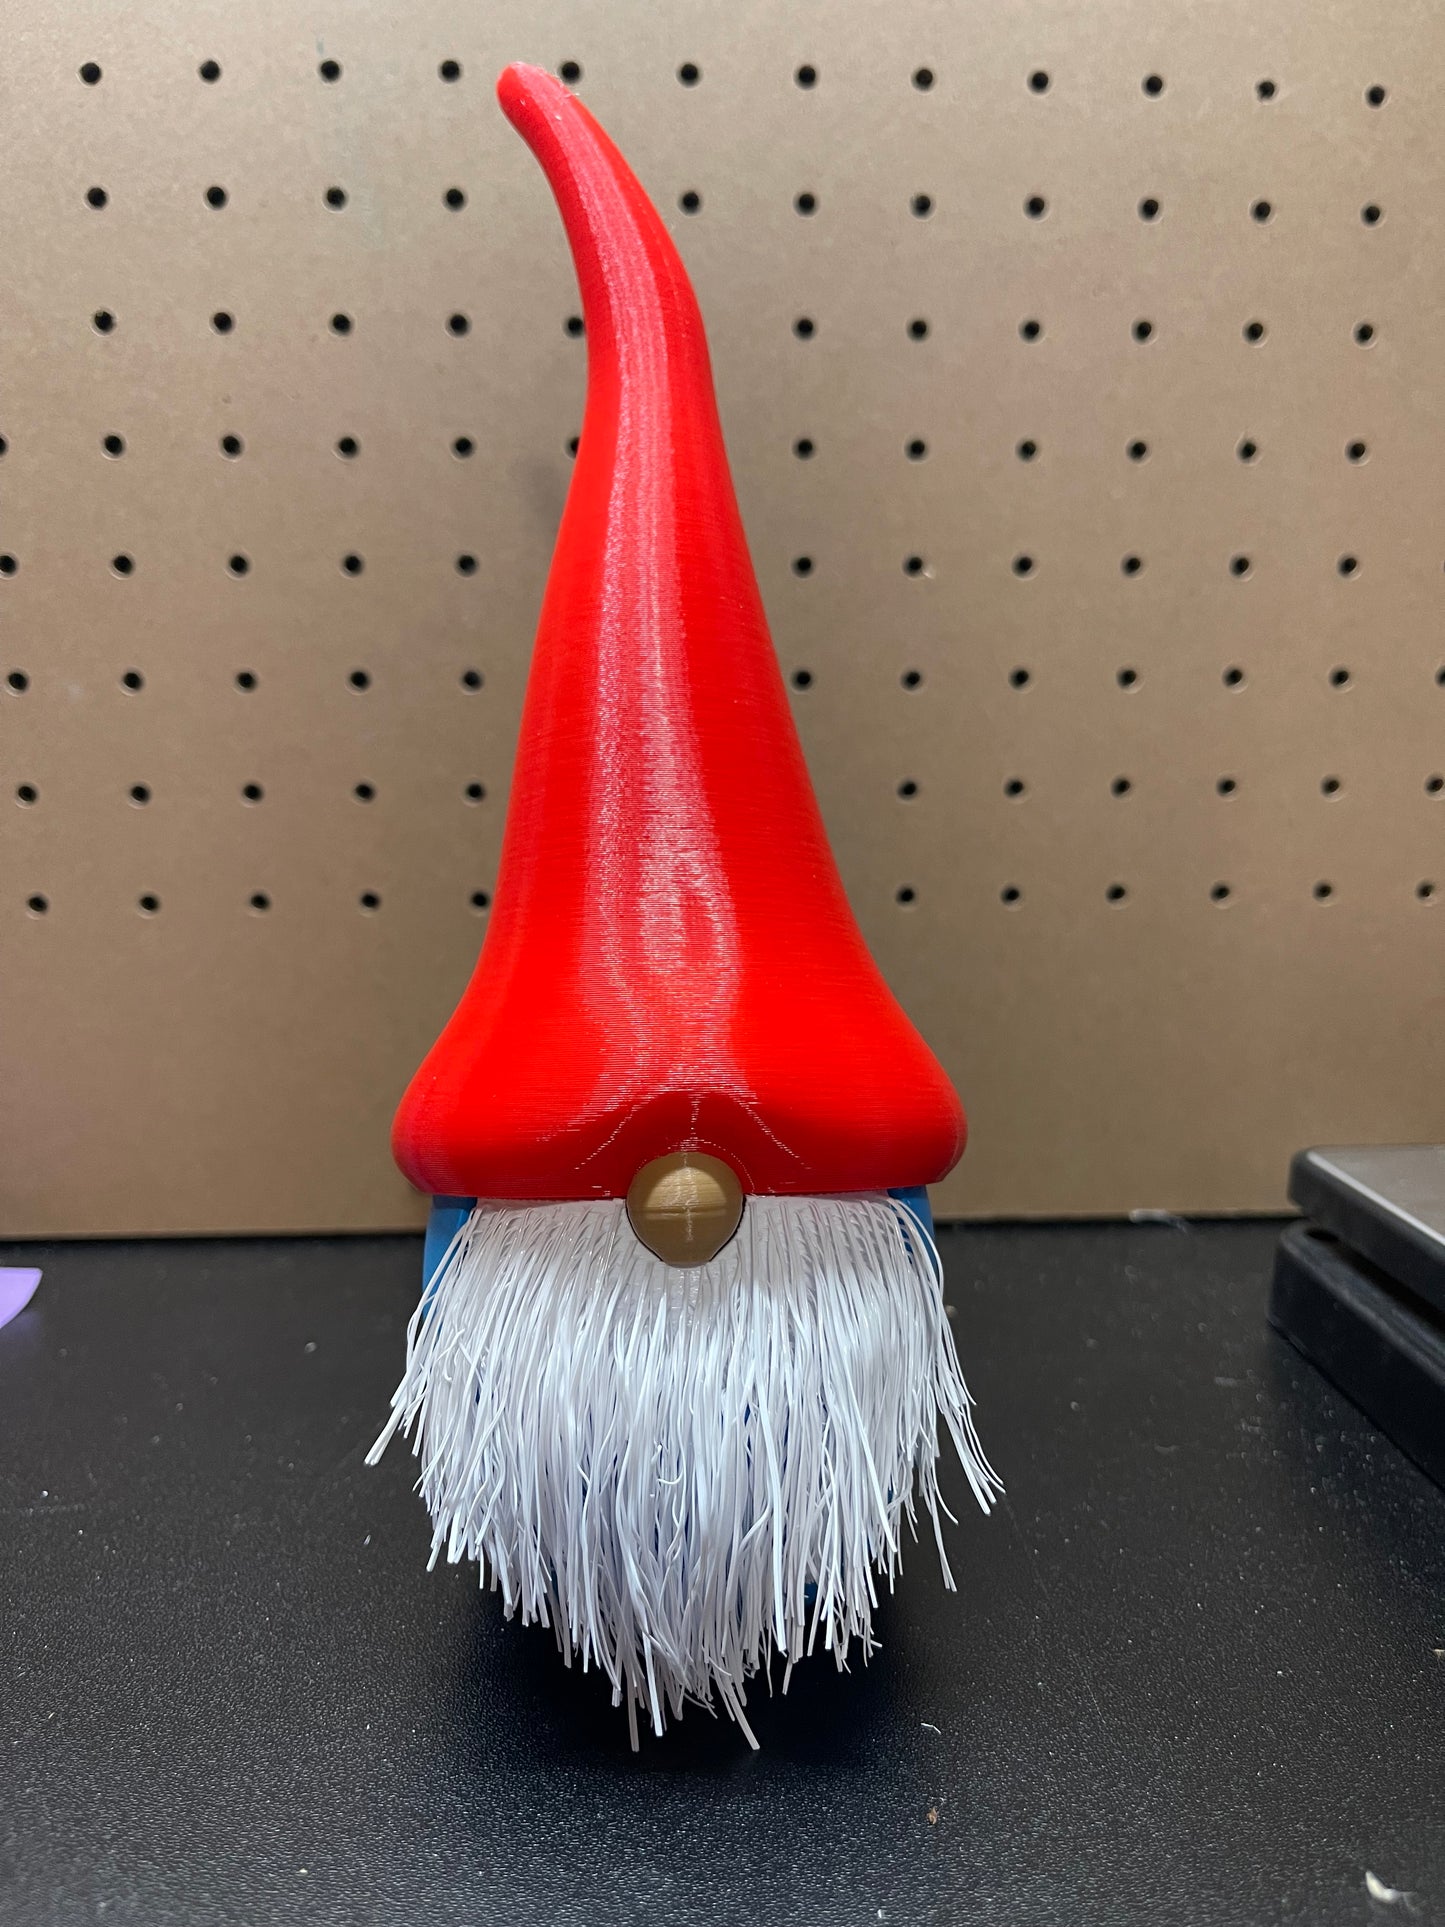 3D Printed Gnome